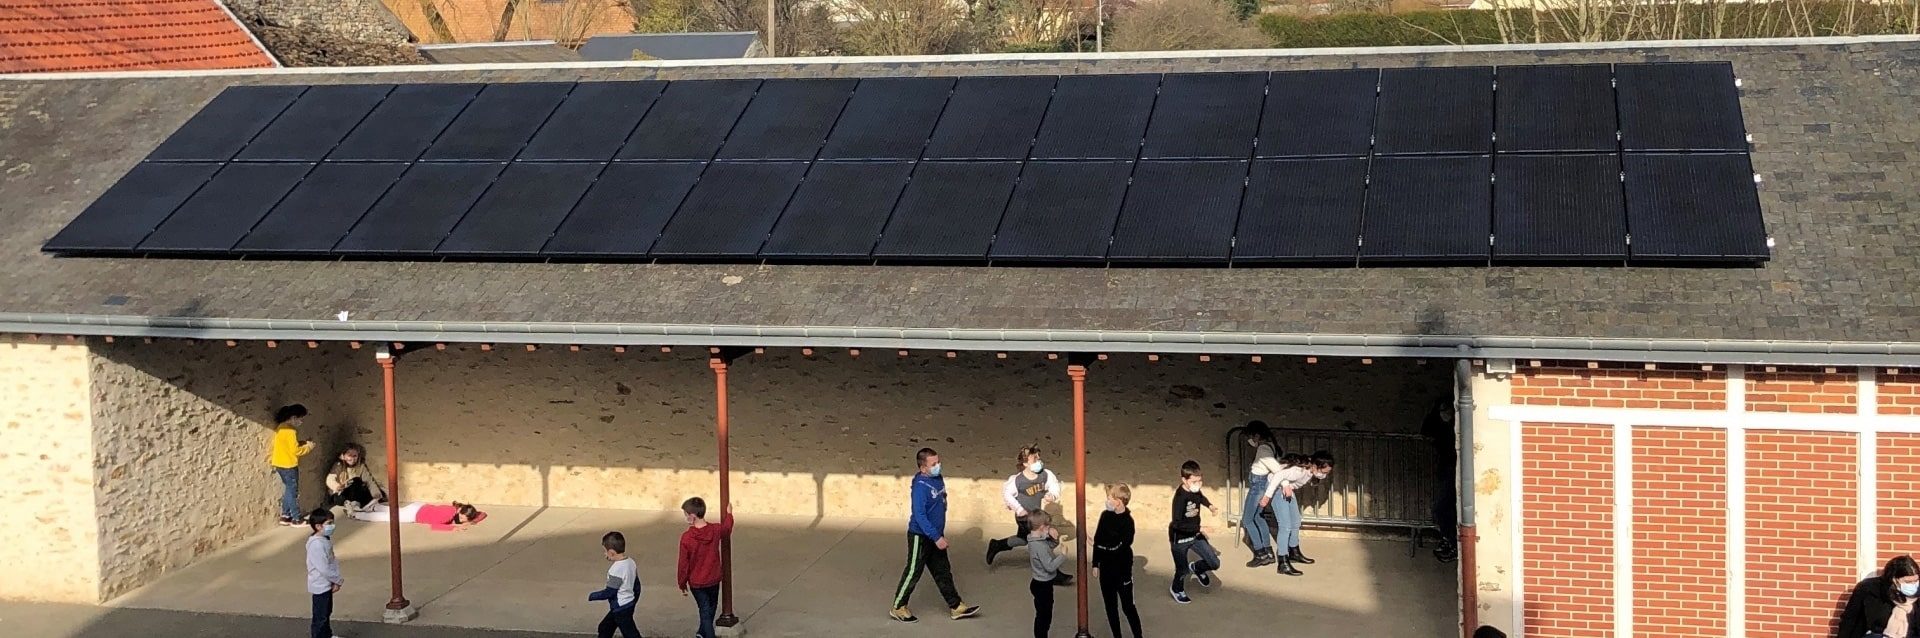 Un préau d'école avec des panneaux solaires sur le toit et des enfants qui s'amusent dans la cour